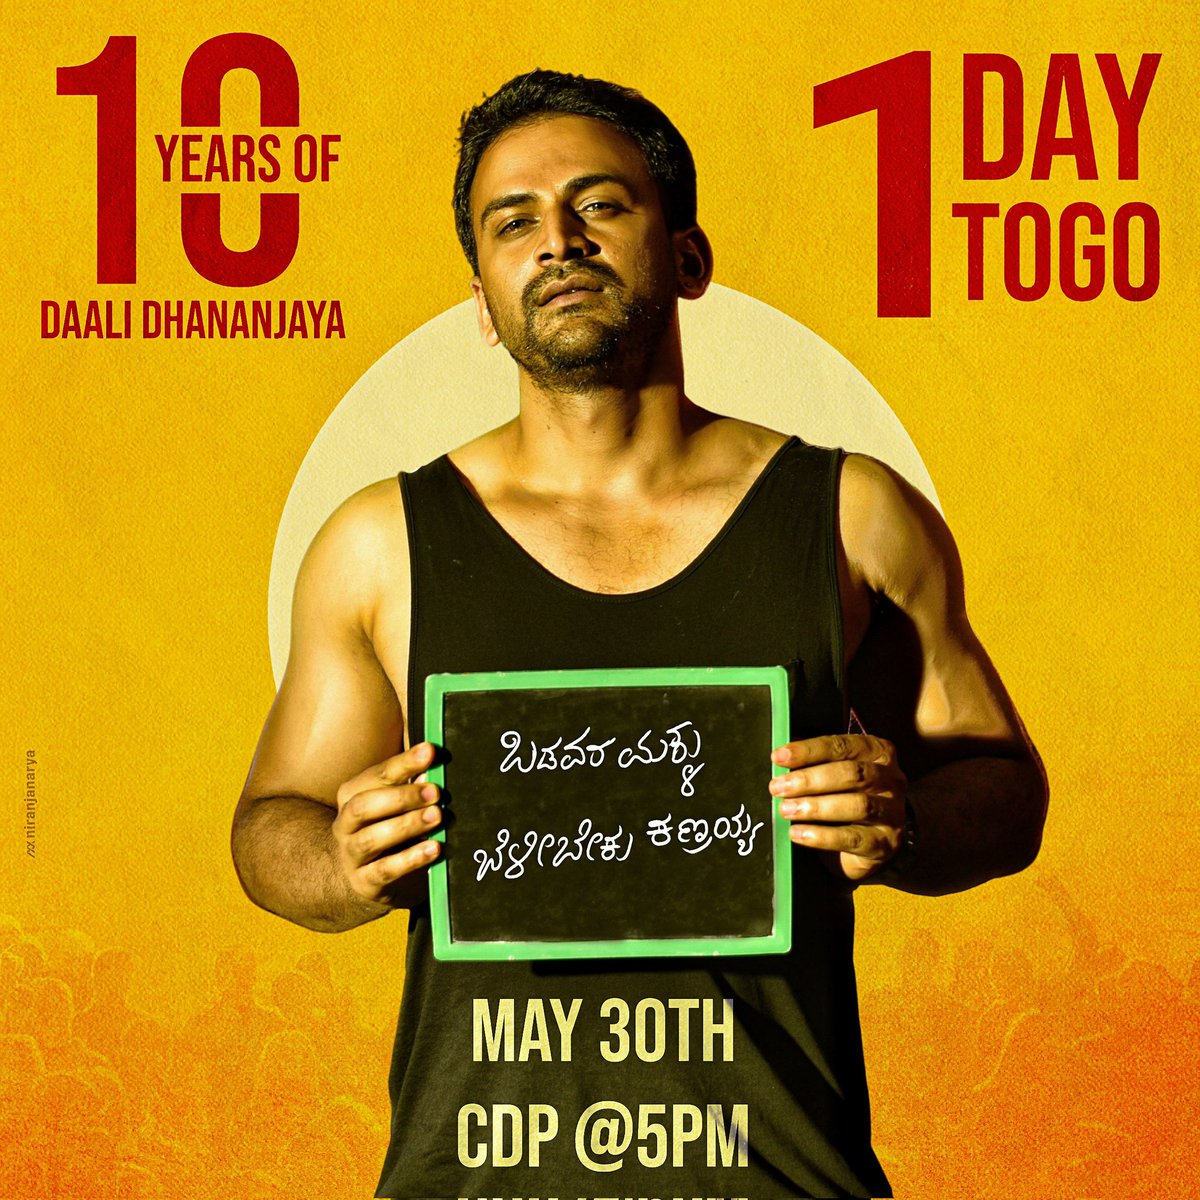 1 Day to Go!!!
CDP RELEASING ON TOMORROW @ 5PM 💥

👉 #10YearsOfDaaliDhananjayaKFI

@Dhananjayaka #Daali #Natarakshasa
#DaaliDhananjaya #Dhananjayafans